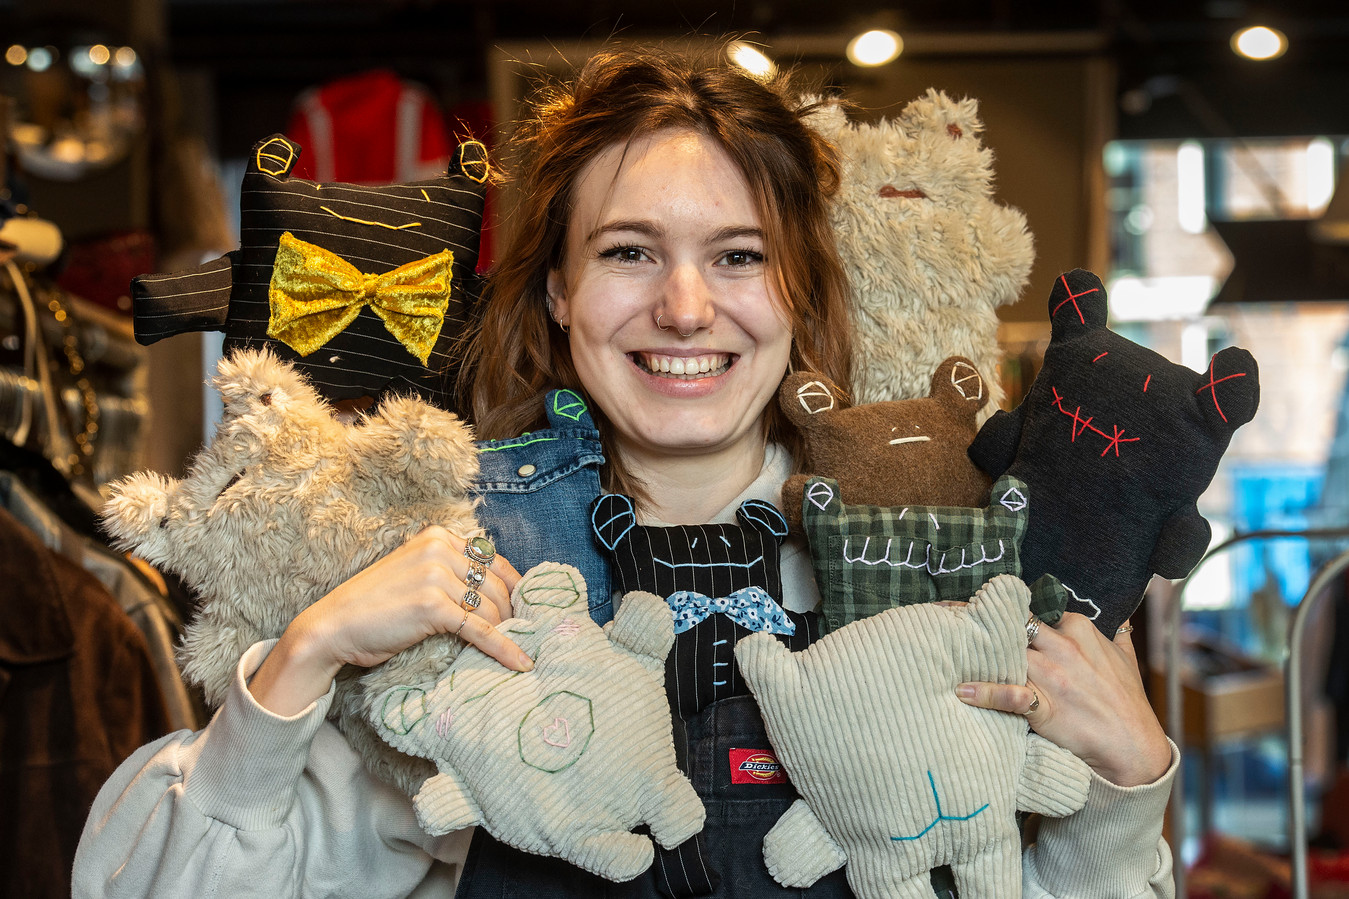 pik Parameters het doel Eliza (23) maakt knuffels van tweedehands kleding: 'De stof bepaalt hoe de  knuffel wordt' | Foto | AD.nl